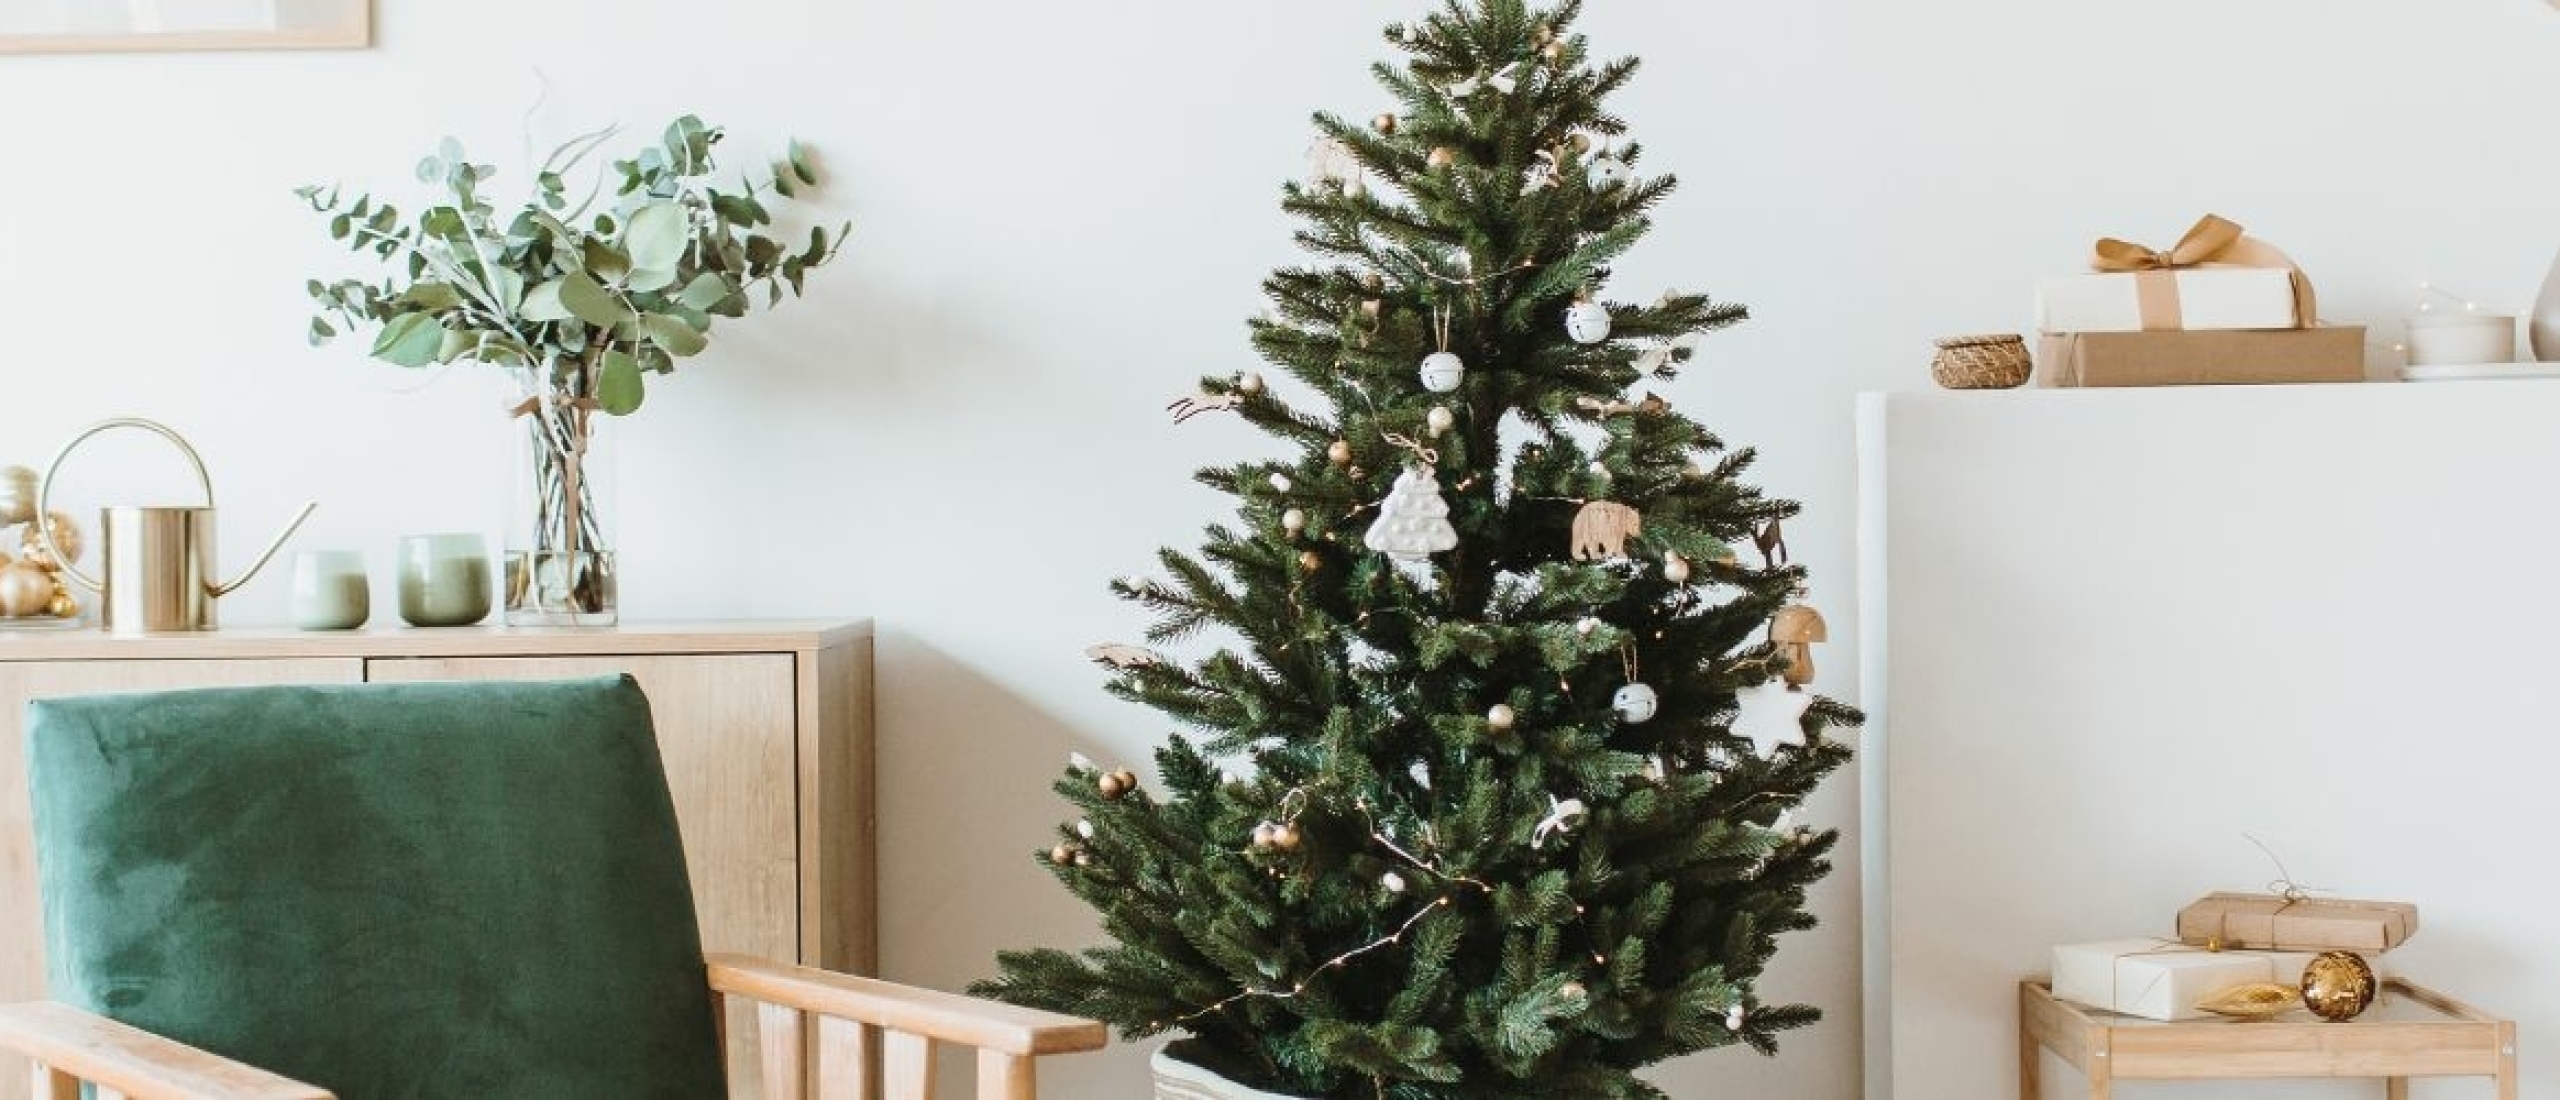 Kun je beter een echte Kerstboom of een Nep Kerstboom kopen?